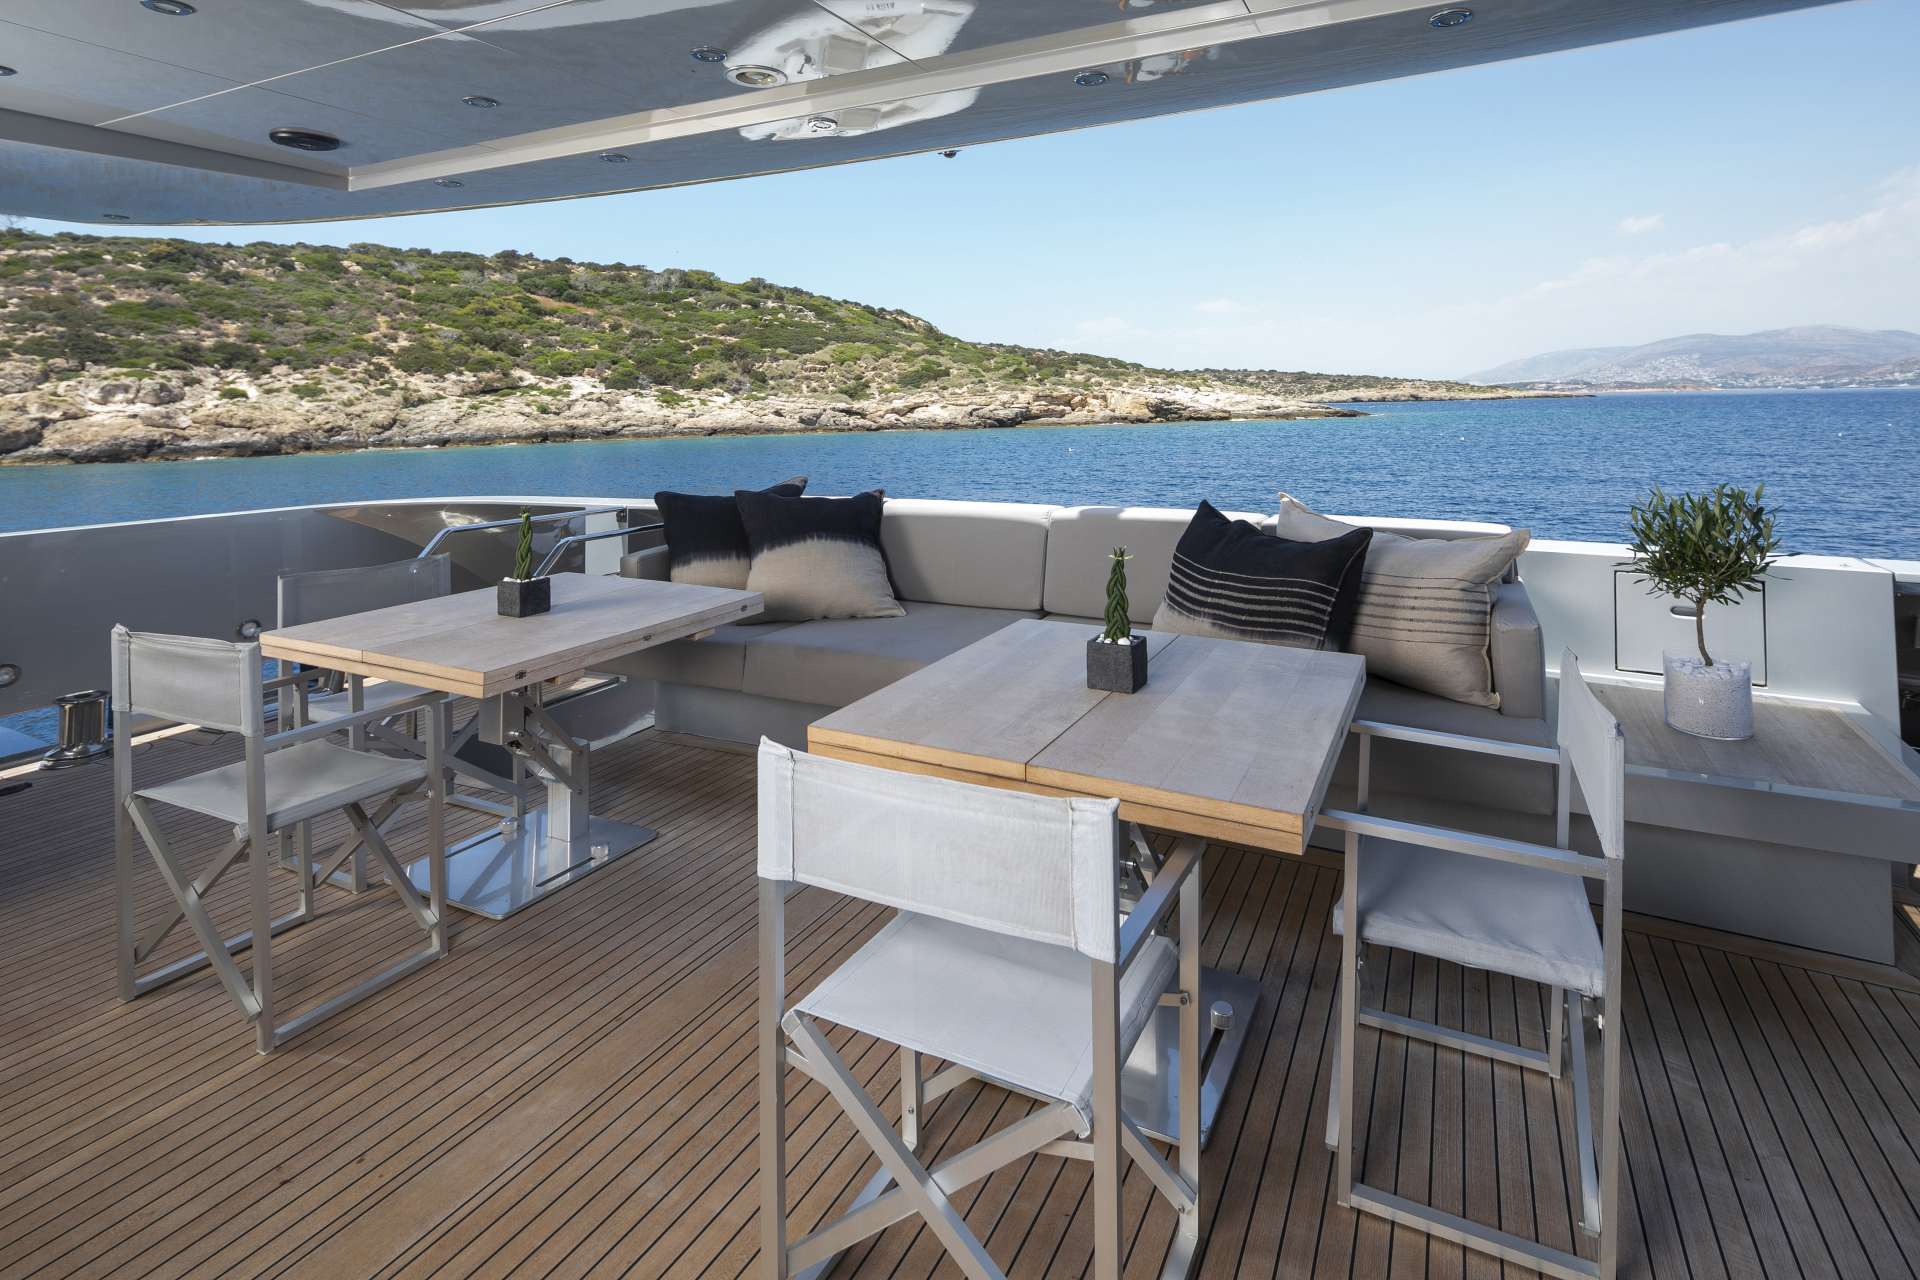 Billa Yacht Charter - Aft deck